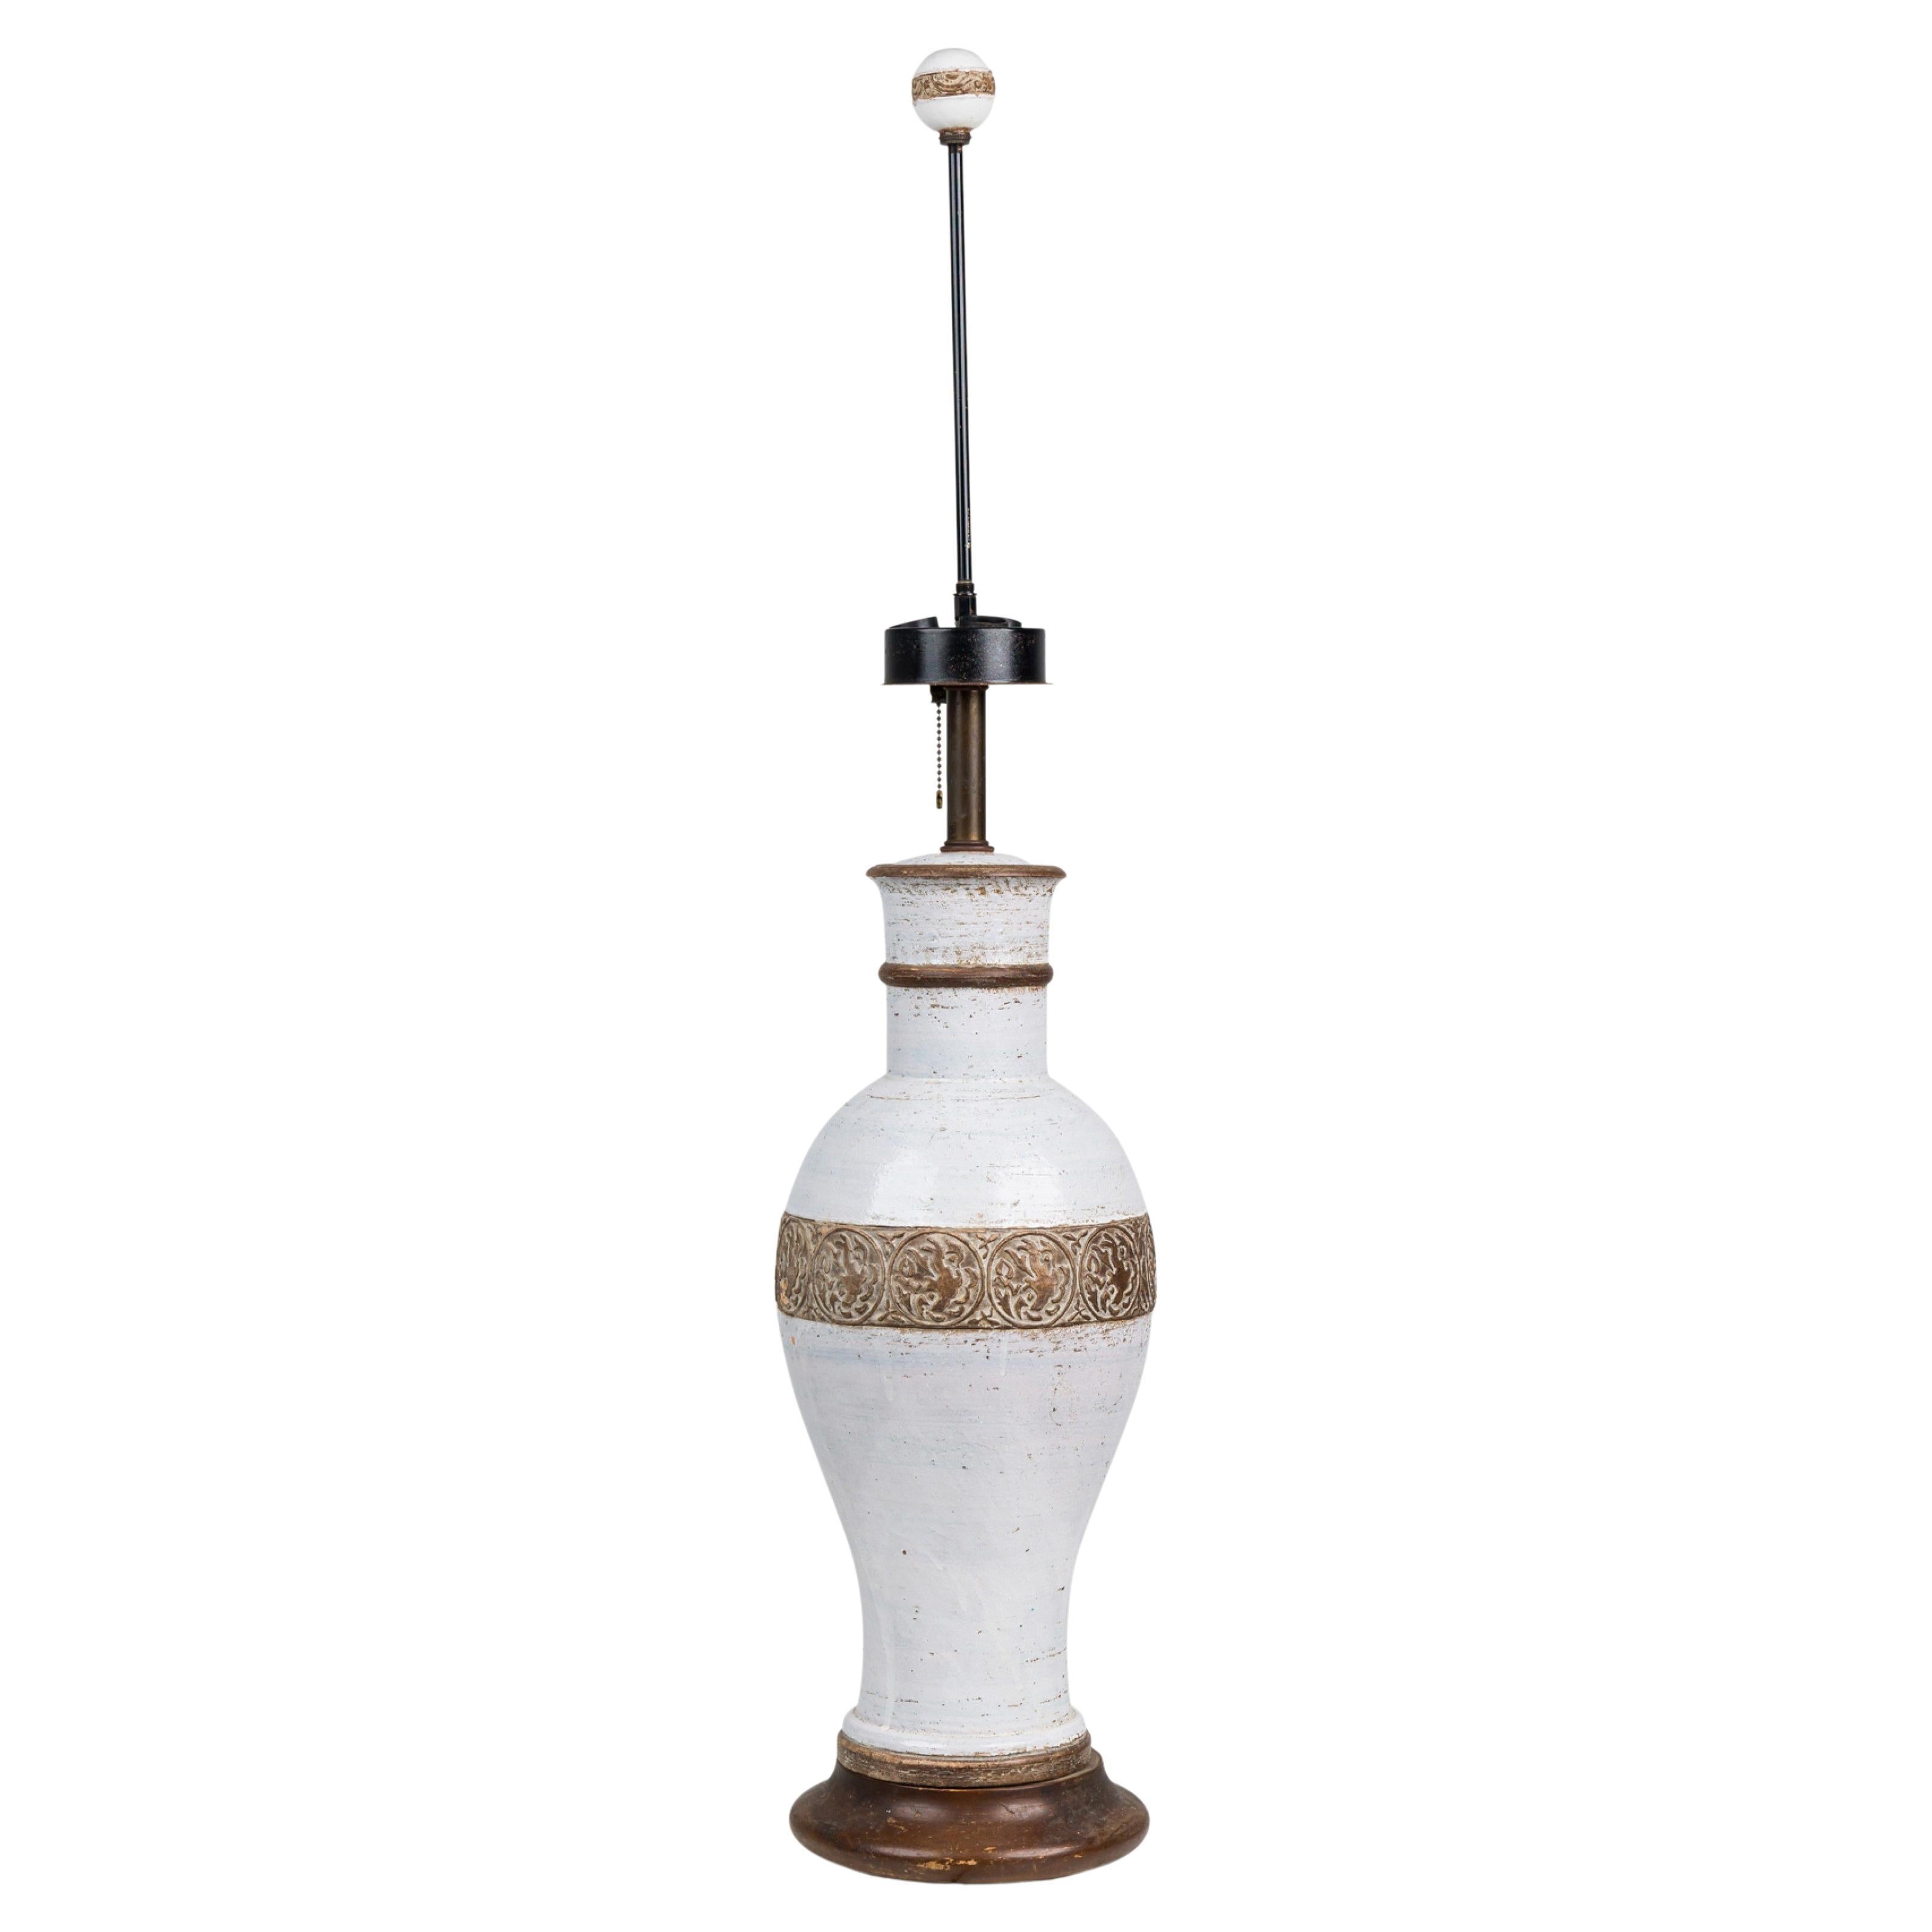 Ugo Zaccagnini lampe de bureau italienne en céramique émaillée blanche avec base en bois foncé